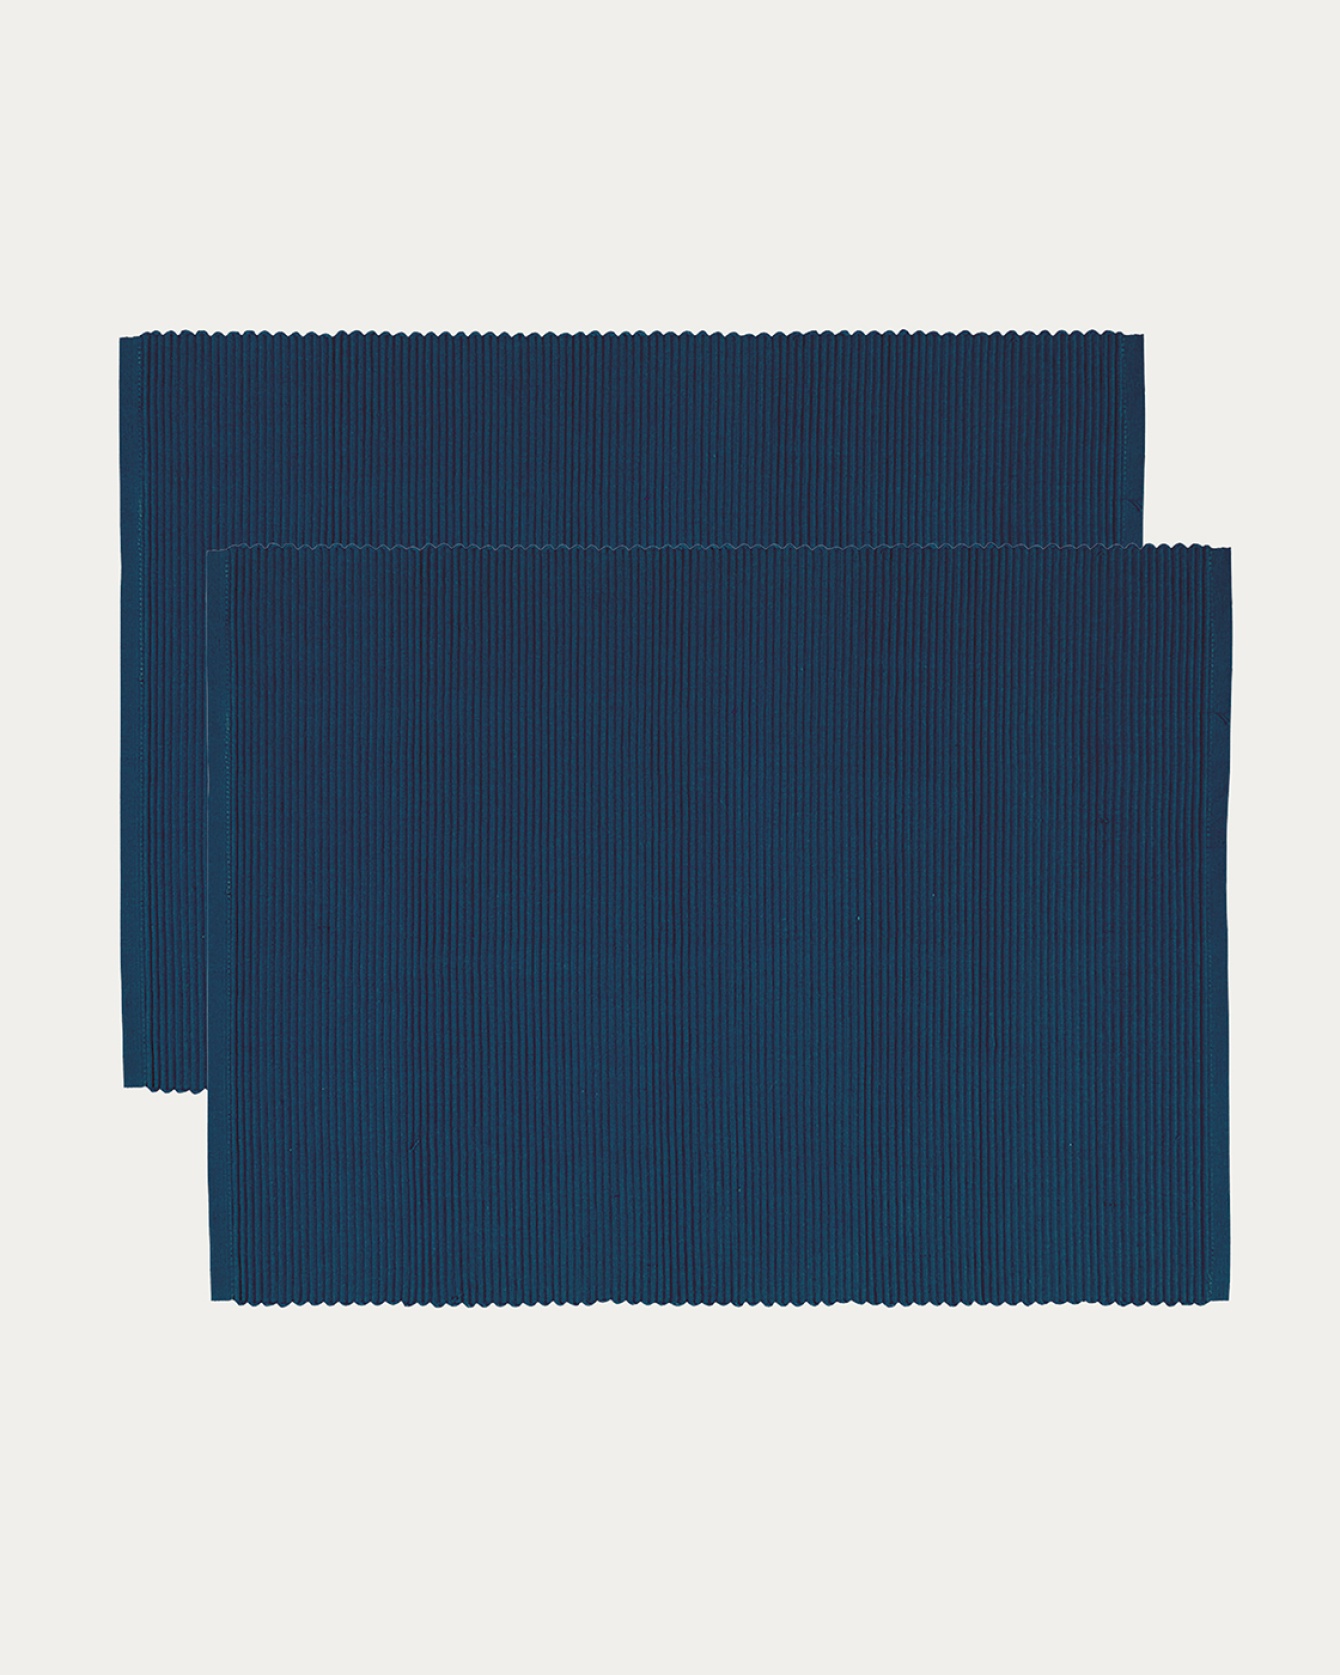 Image du produit set de table UNI bleu nuit en coton doux de qualité côtelée de LINUM DESIGN. Taille 35 x 46 cm et vendu en lot de 2.